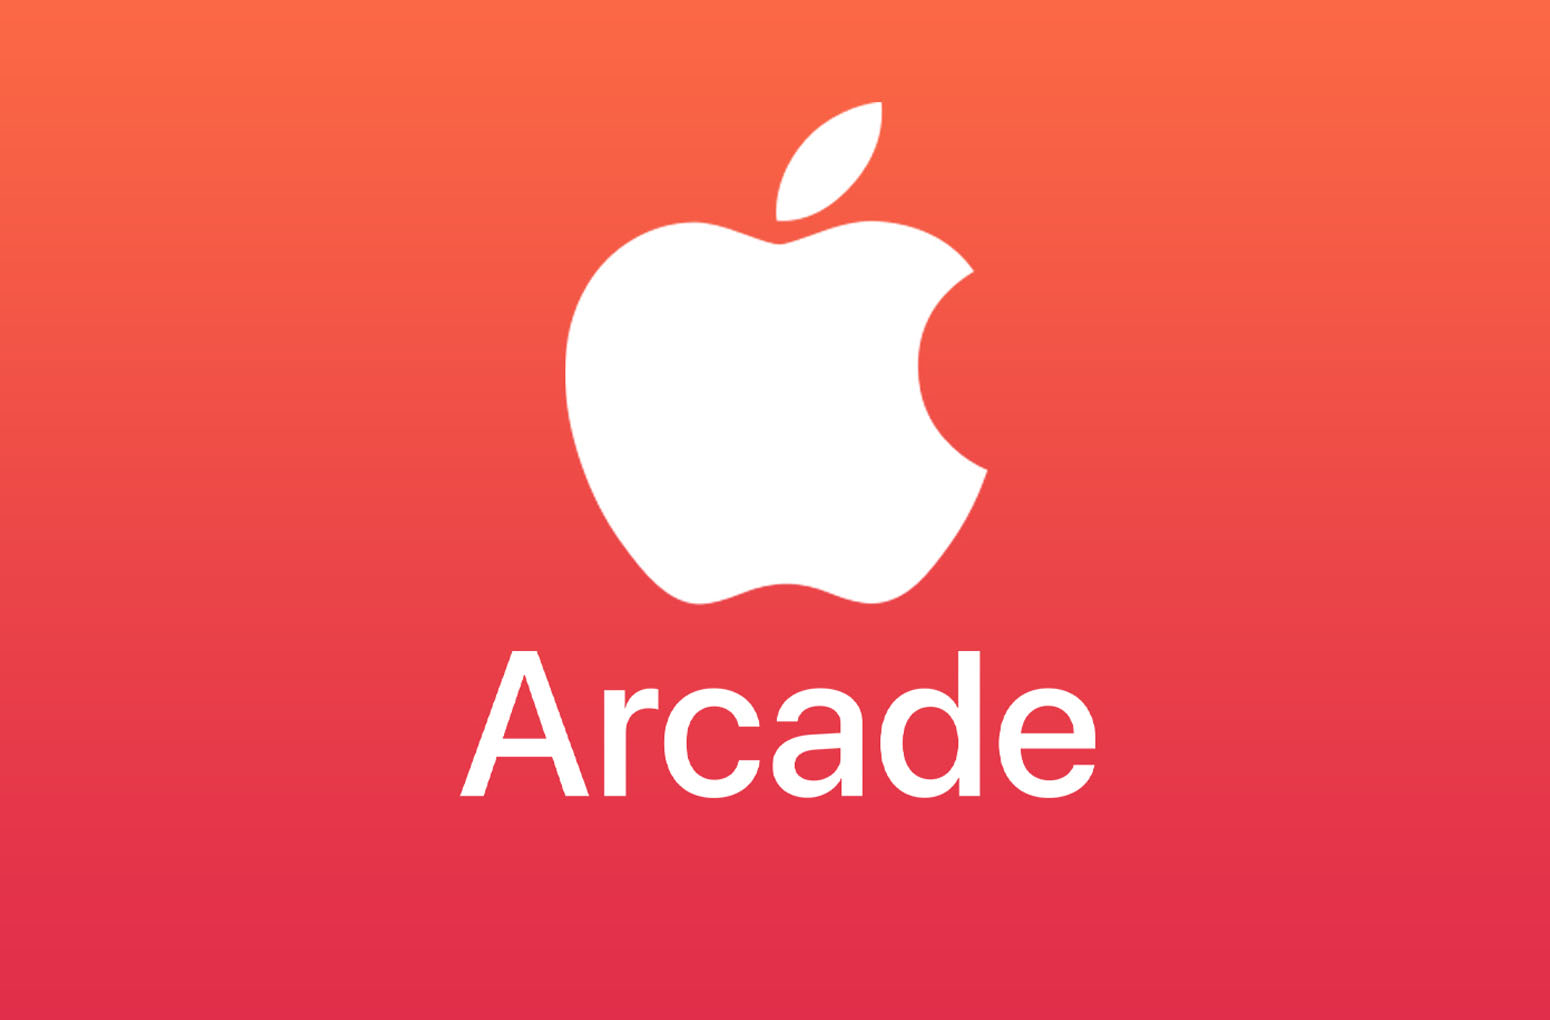 Подписка apple arcade в россии